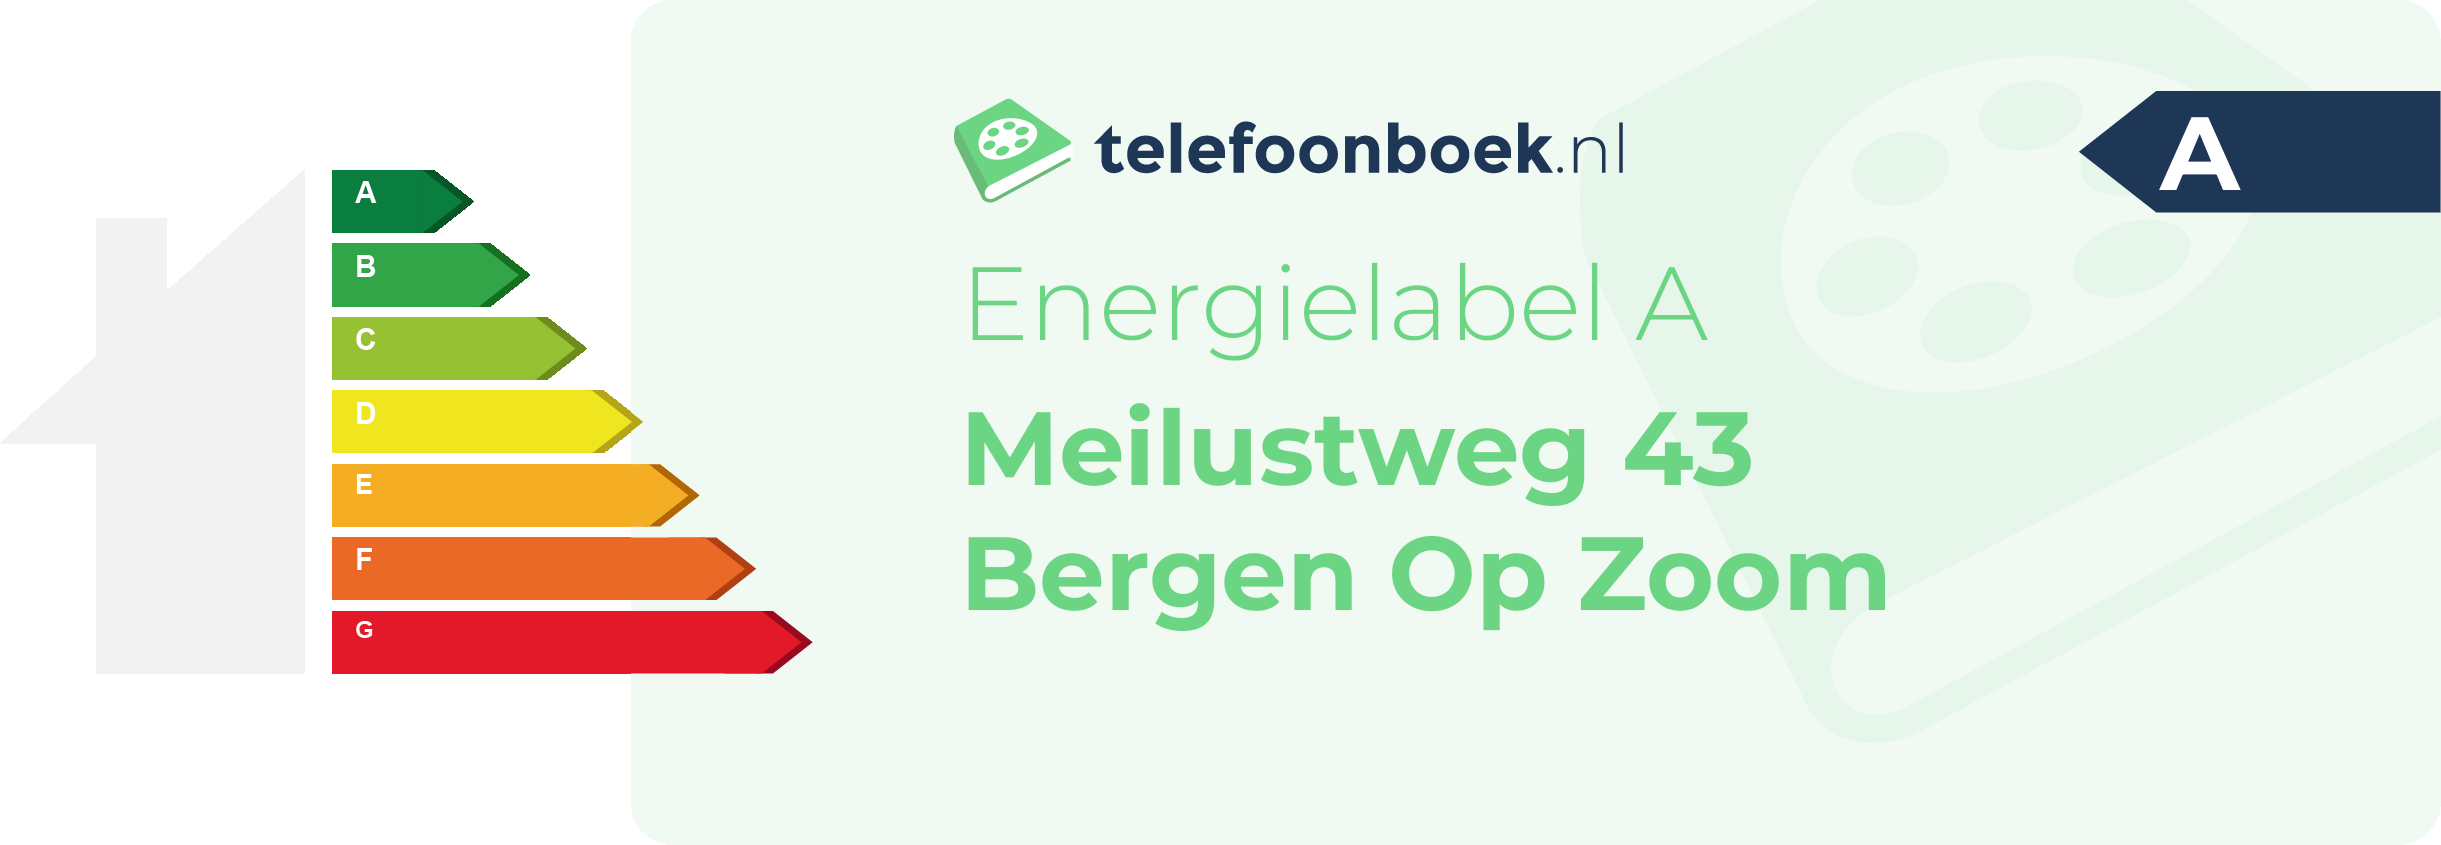 Energielabel Meilustweg 43 Bergen Op Zoom